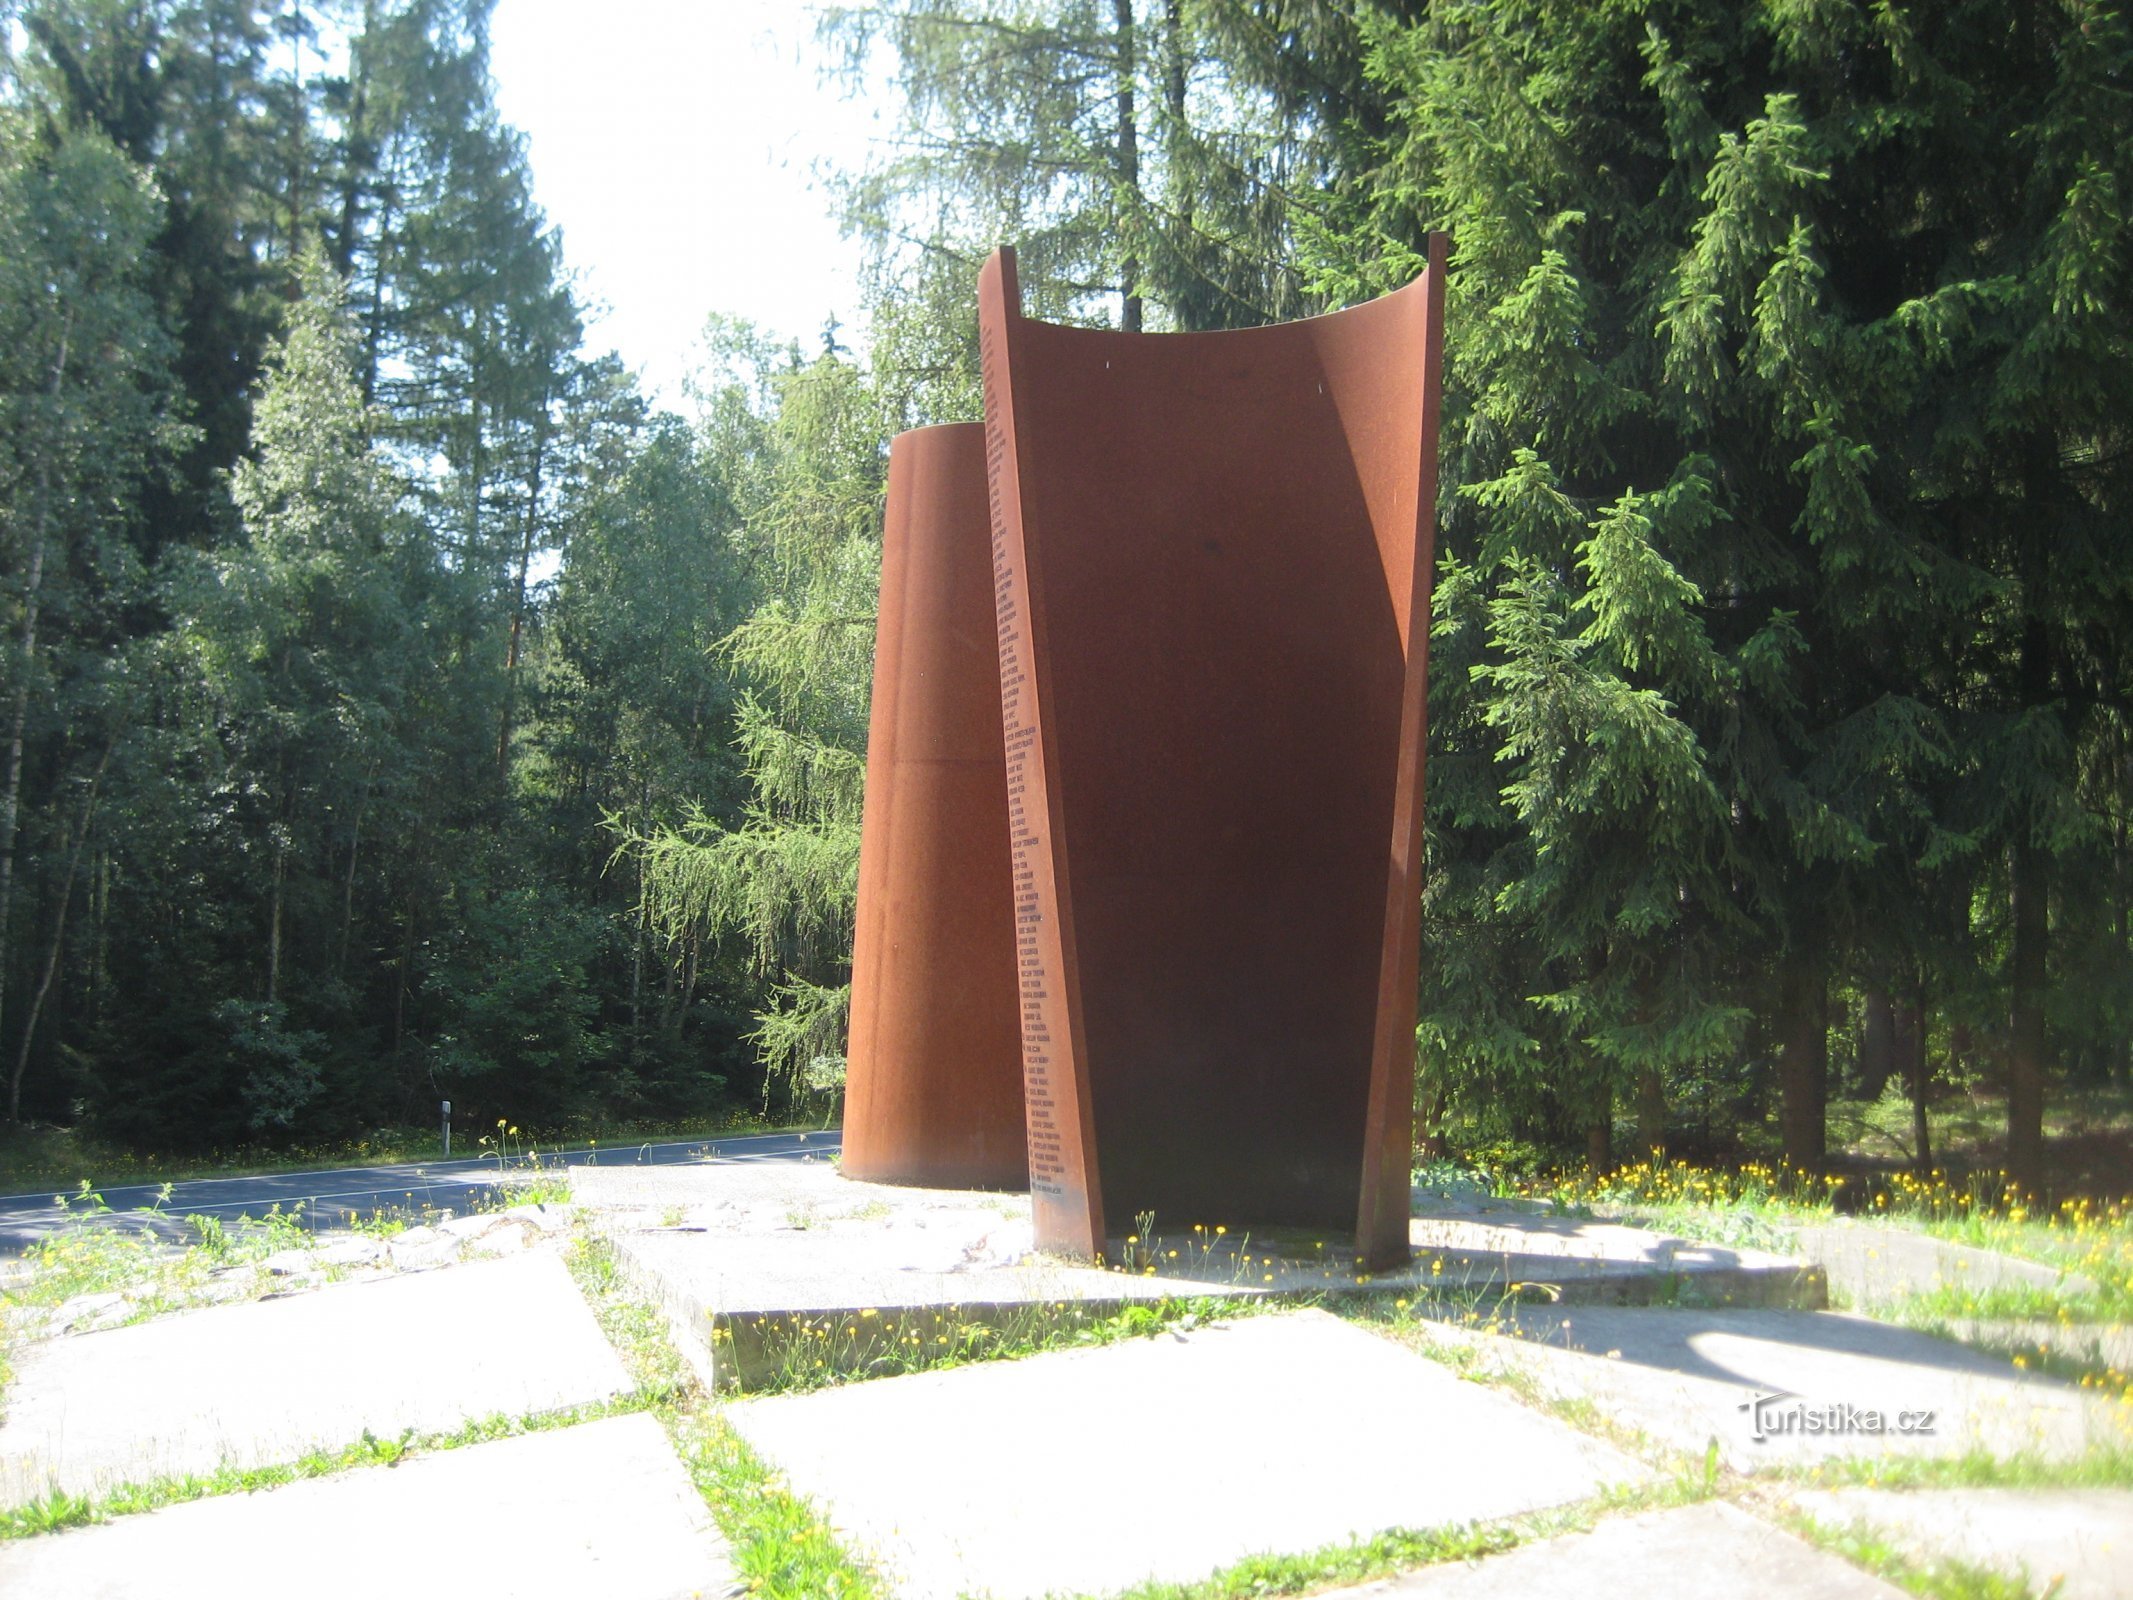 Μνημείο για τα θύματα του Σιδηρού Παραπετάσματος - Cheb